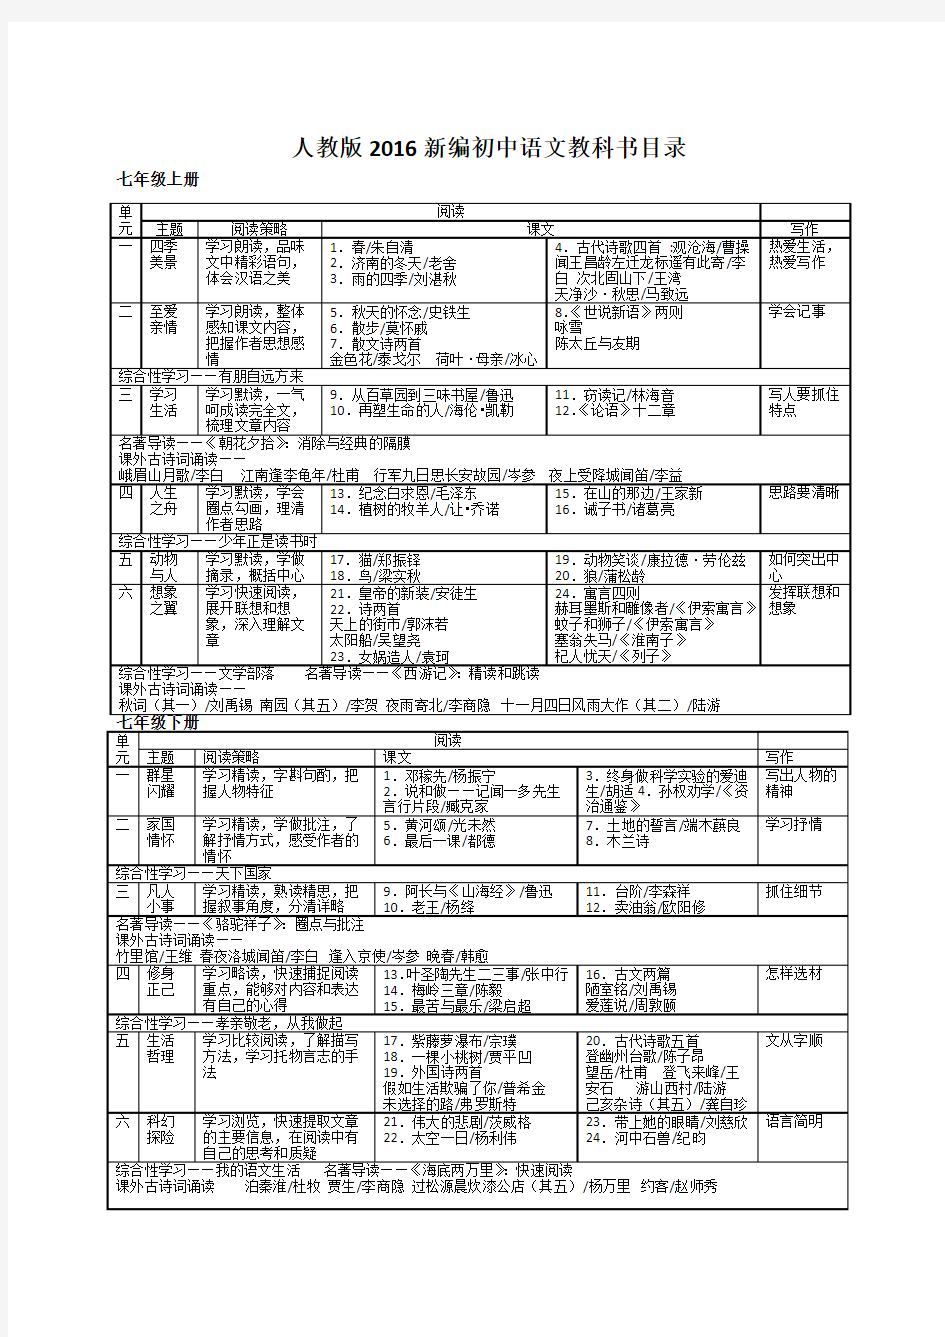 2016年人教版初中语文  教科书章节总目录(整理编辑)